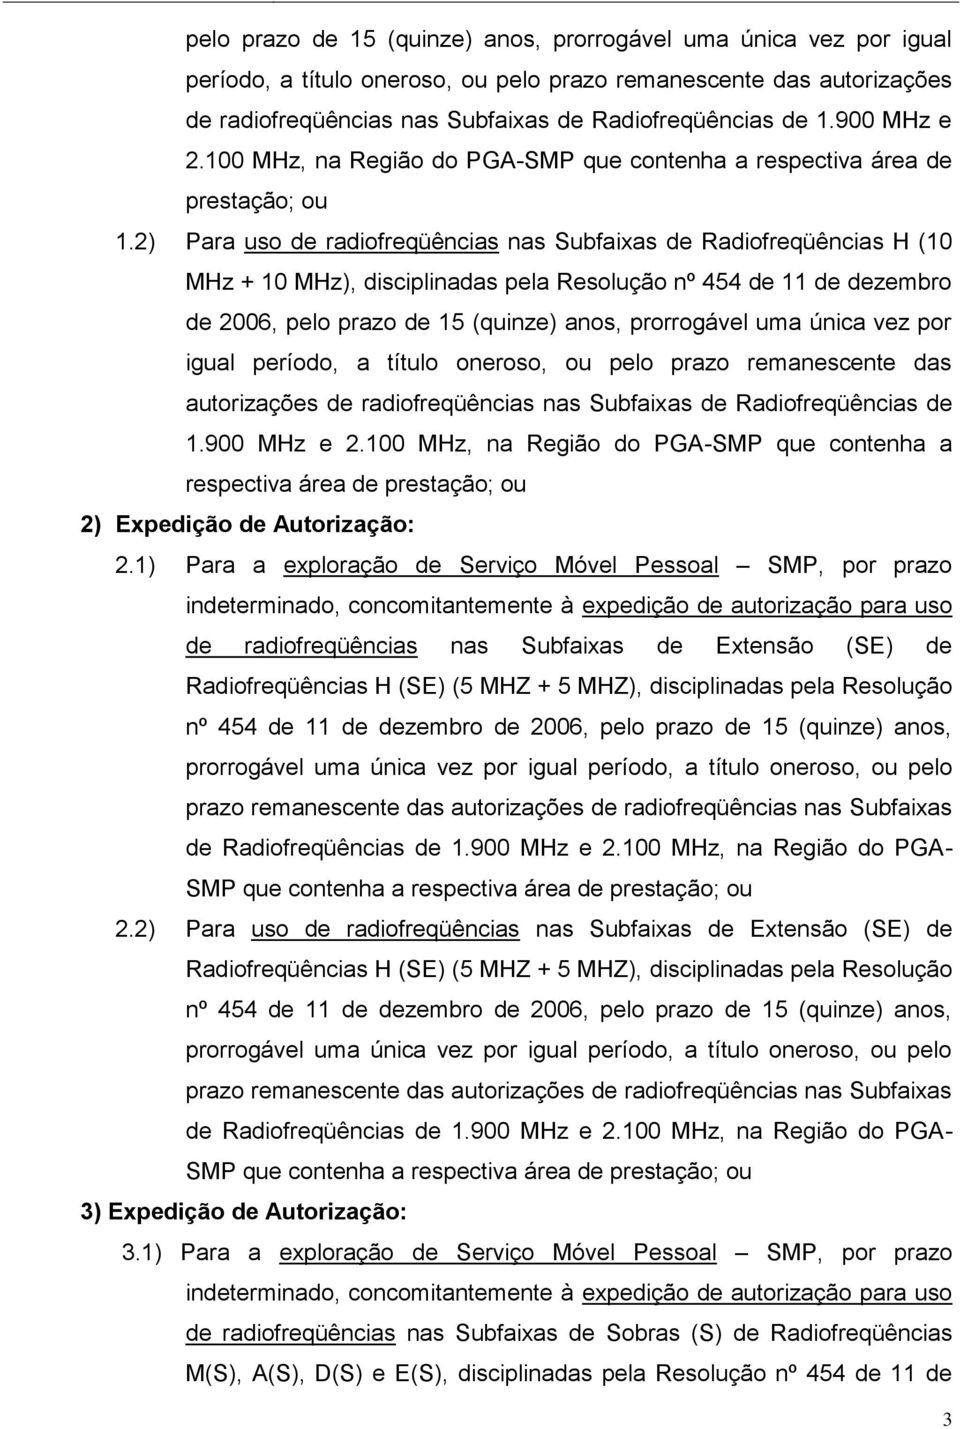 2) Para uso de radiofreqüências nas Subfaixas de Radiofreqüências H (10 MHz + 10 MHz), disciplinadas pela Resolução nº 454 de 11 de dezembro de 2006, 900 MHz e 2.